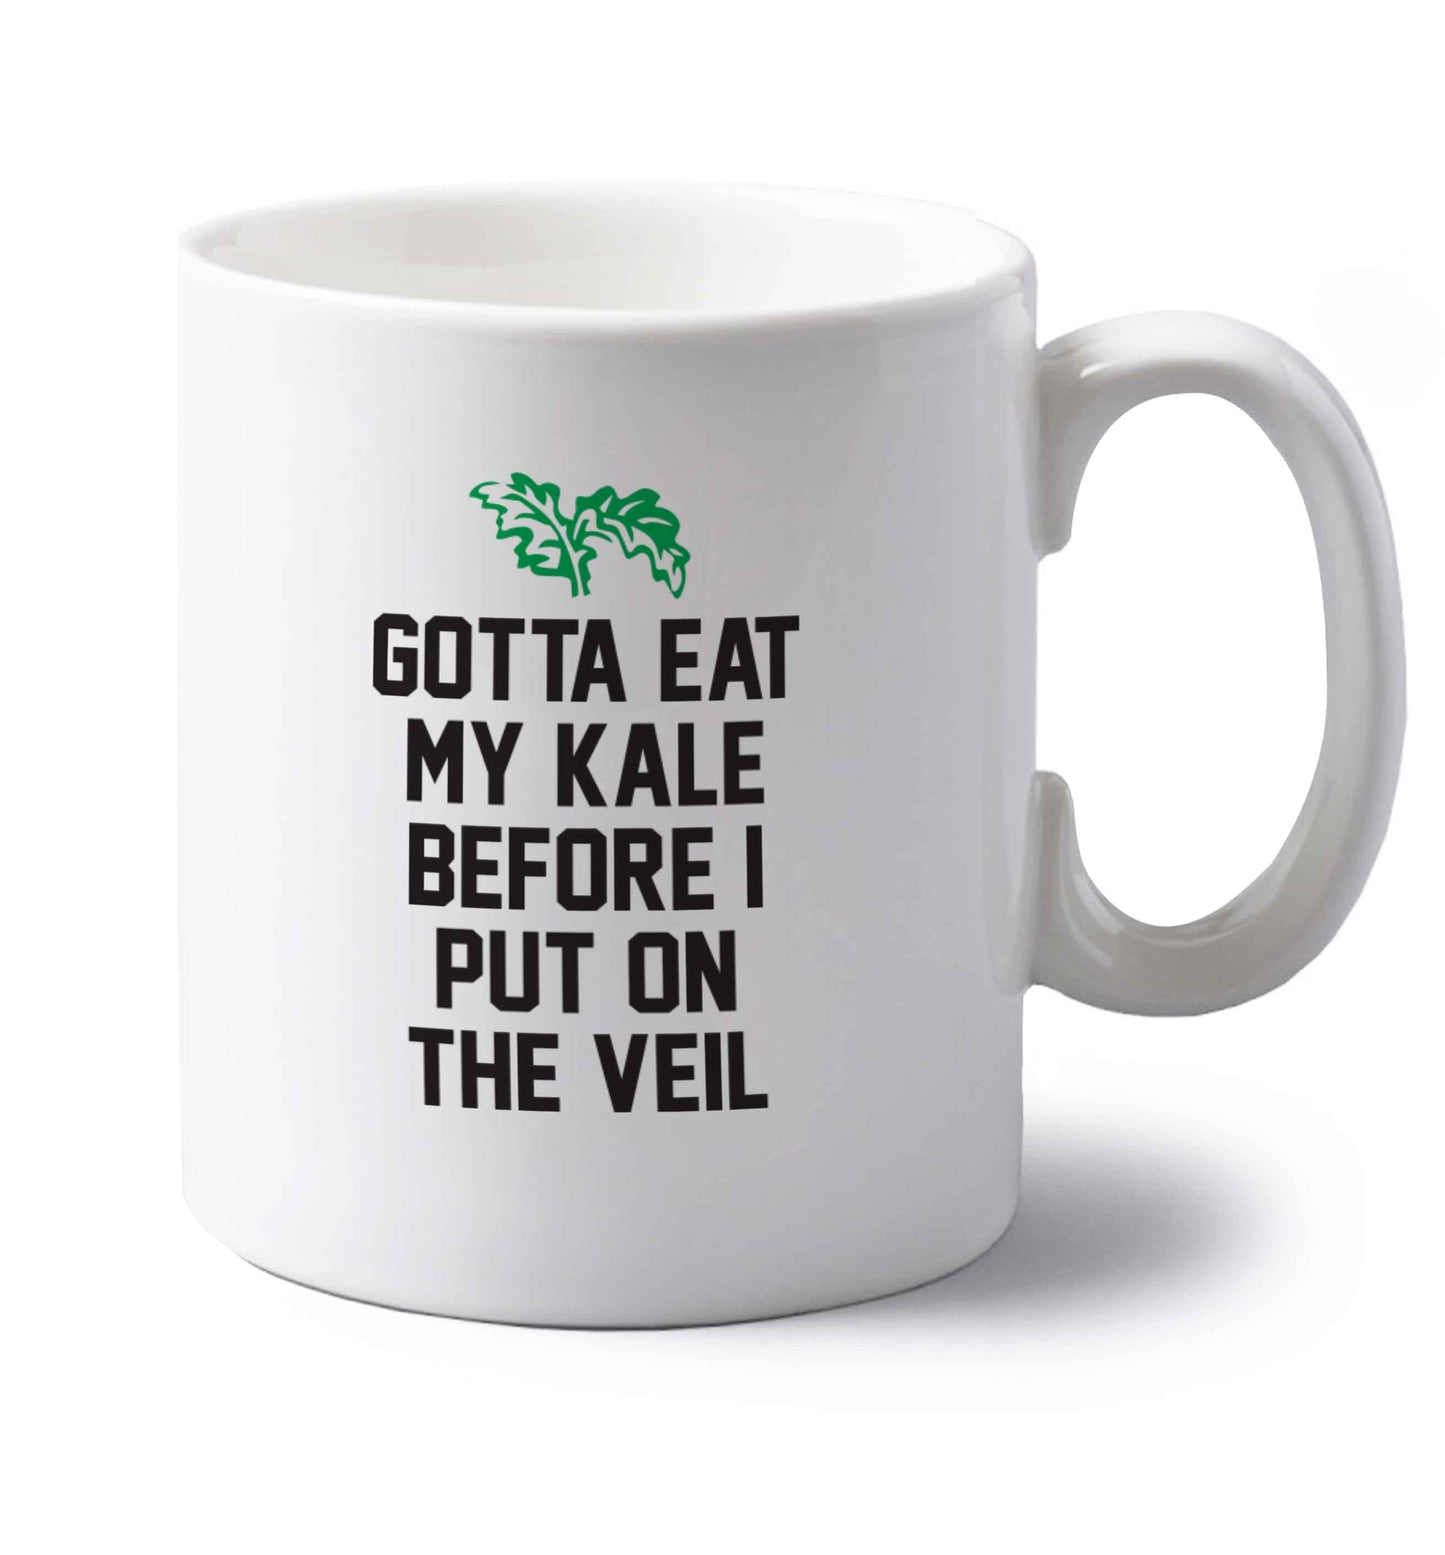 Gotta eat my kale before I put on the veil left handed white ceramic mug 